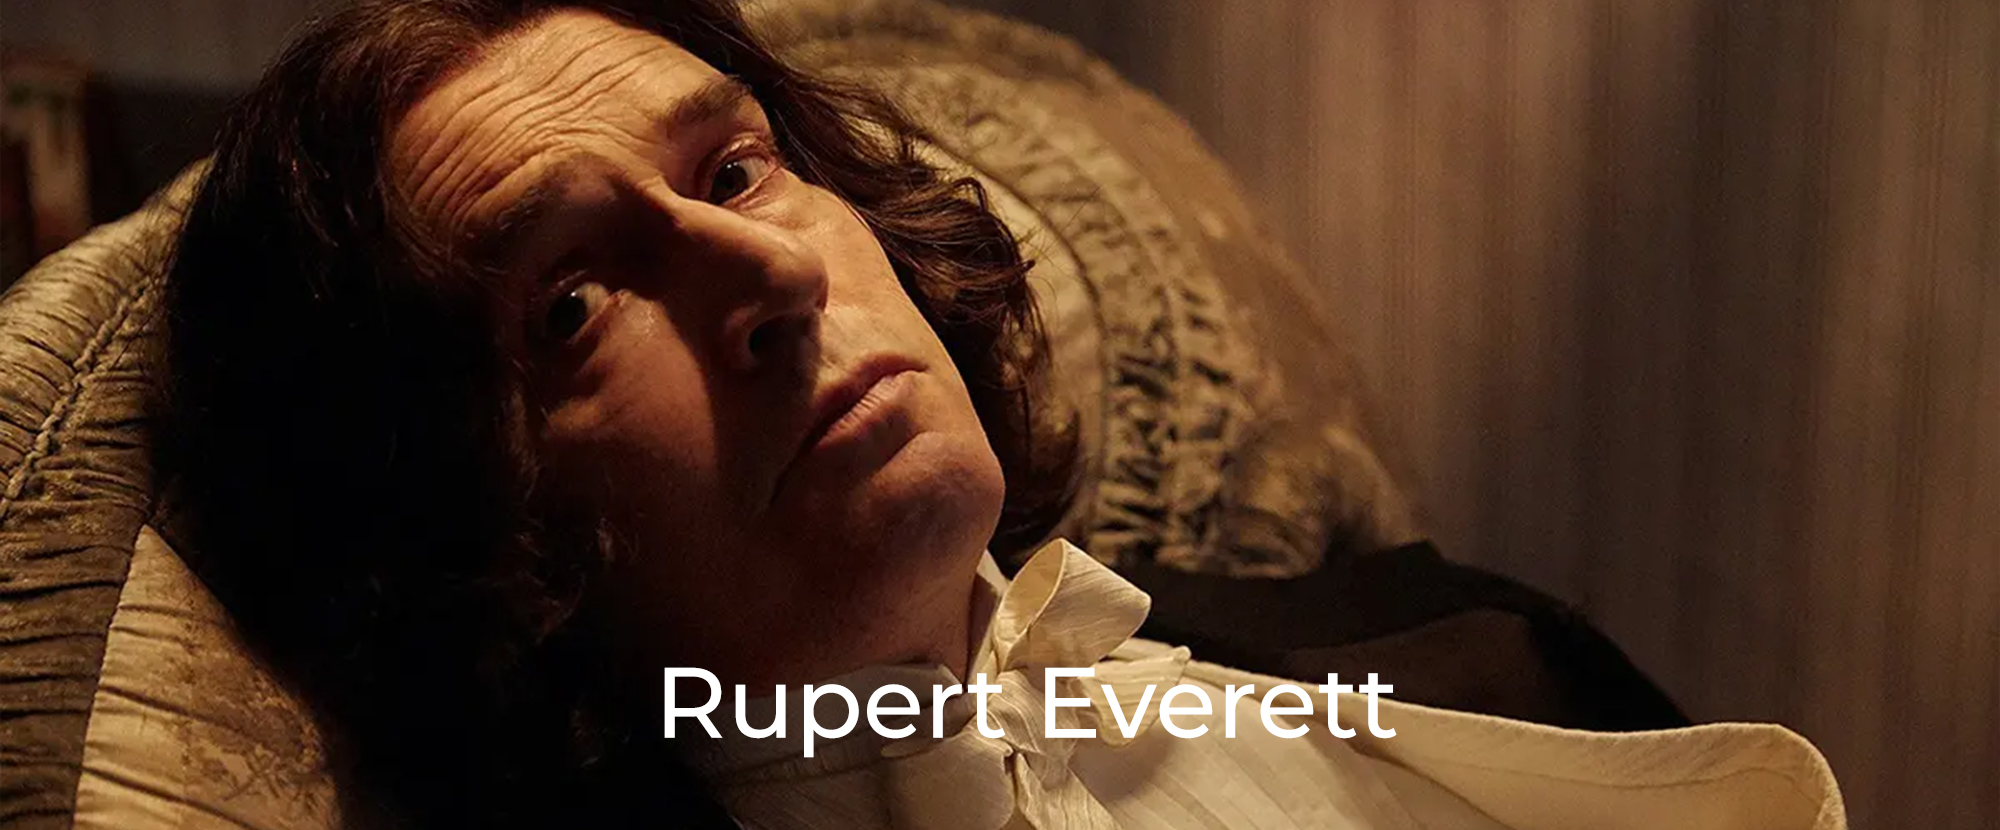 Rupert-Everett-Oscar-Wilde-Header